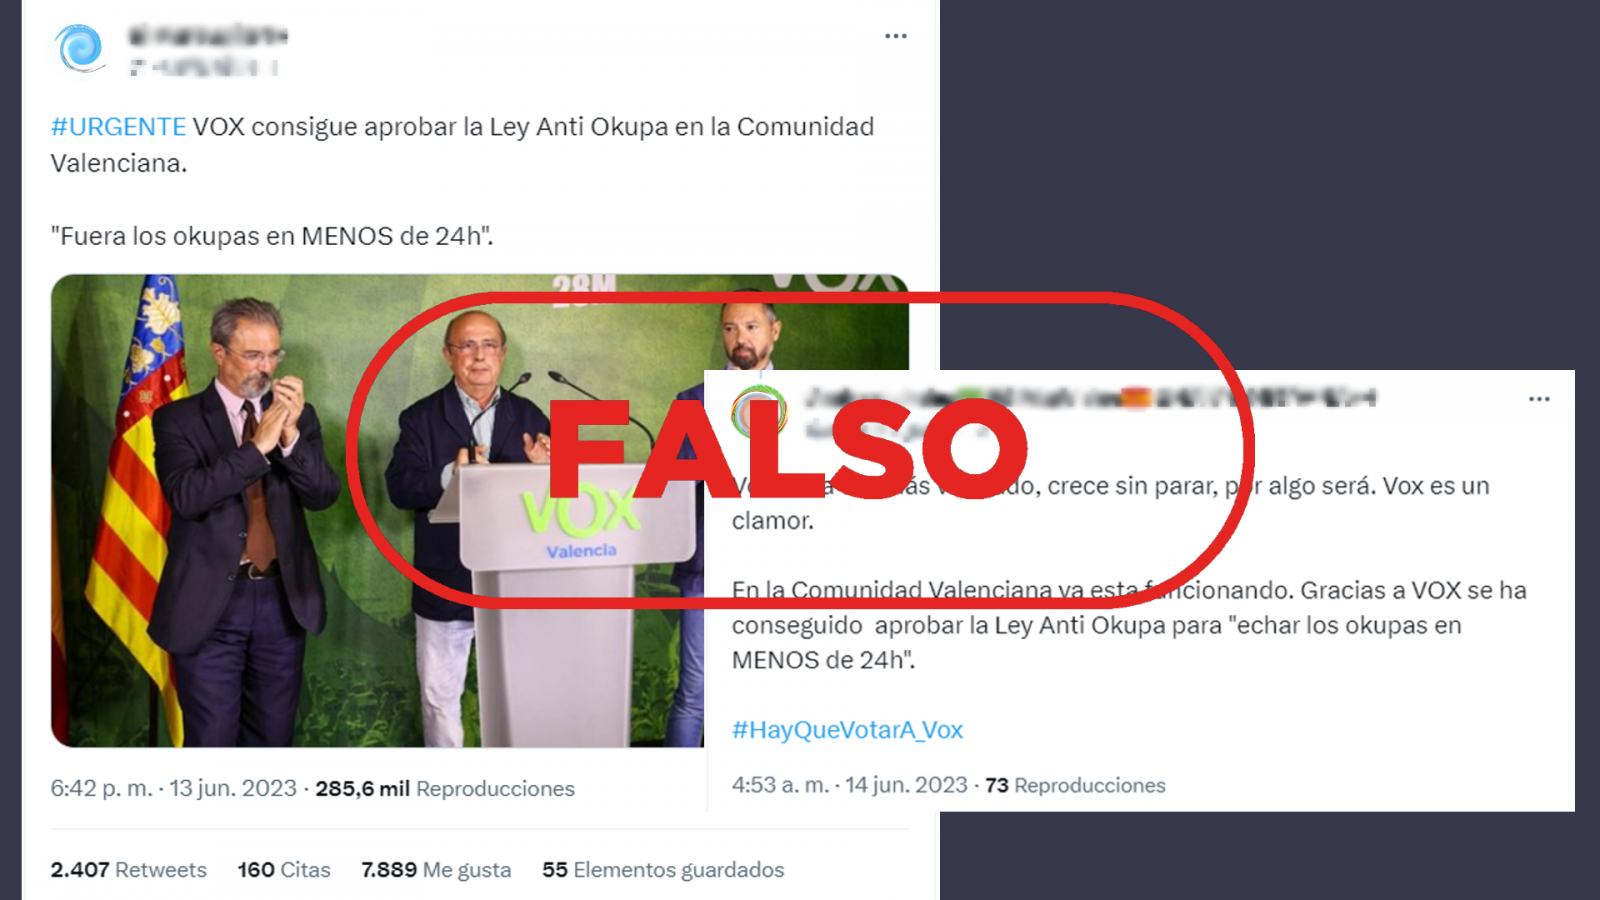 Mensajes de Twitter que difunden la falsa idea de que en la Comunidad Valenciana se ha aprobado una ley para "echar a los okupas en menos de 24 horas", con el sello Falso en rojo